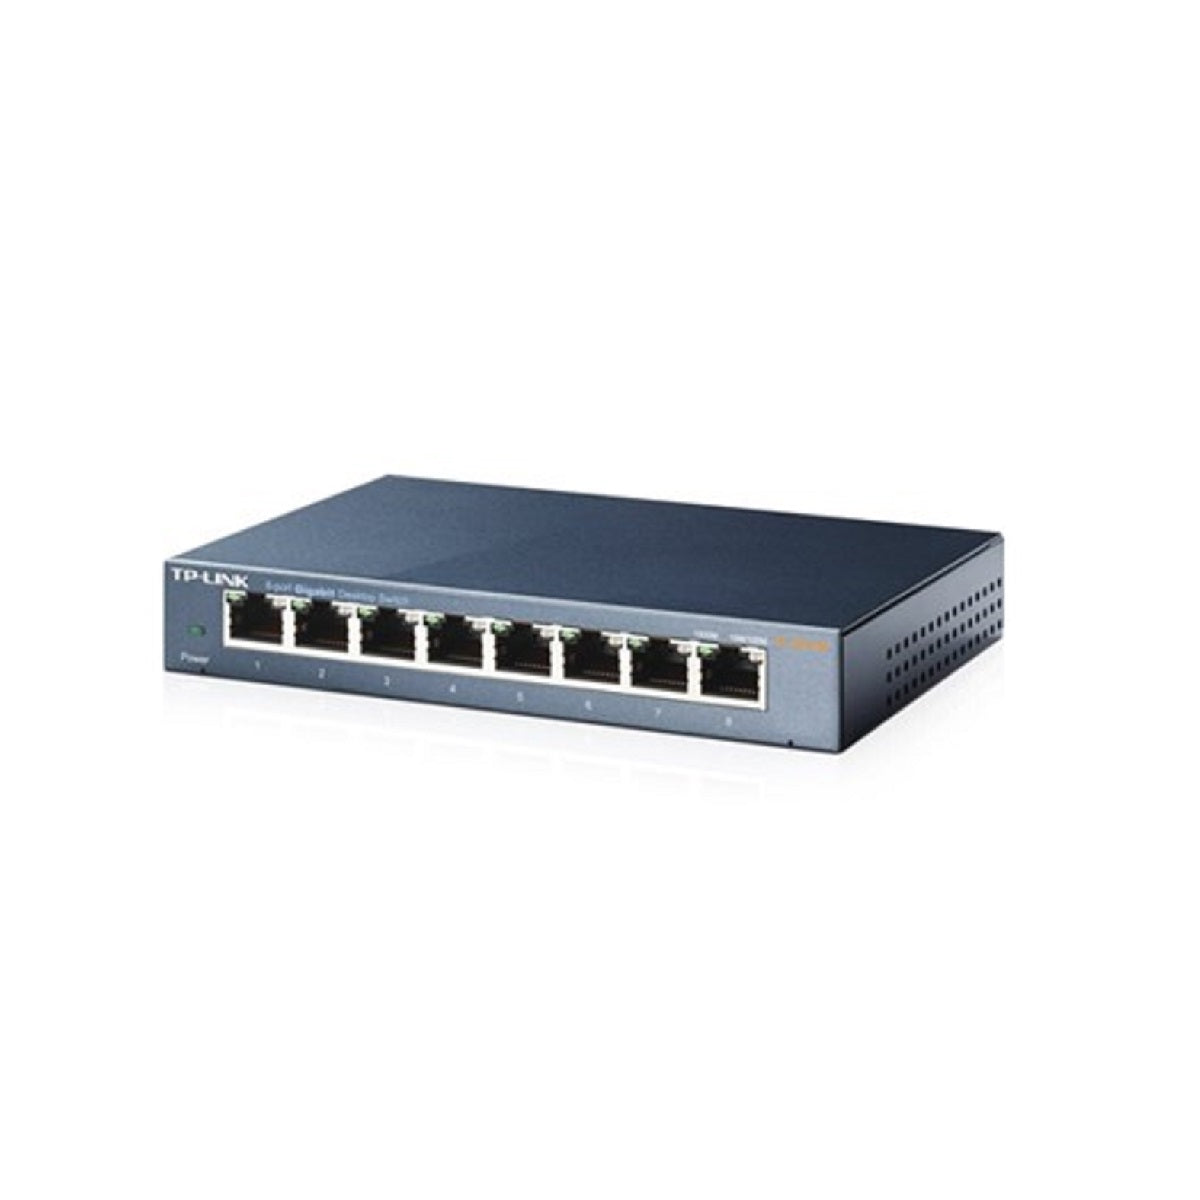 TP-LINK TL-SG108 8 Port Desktop Gigabit Switch